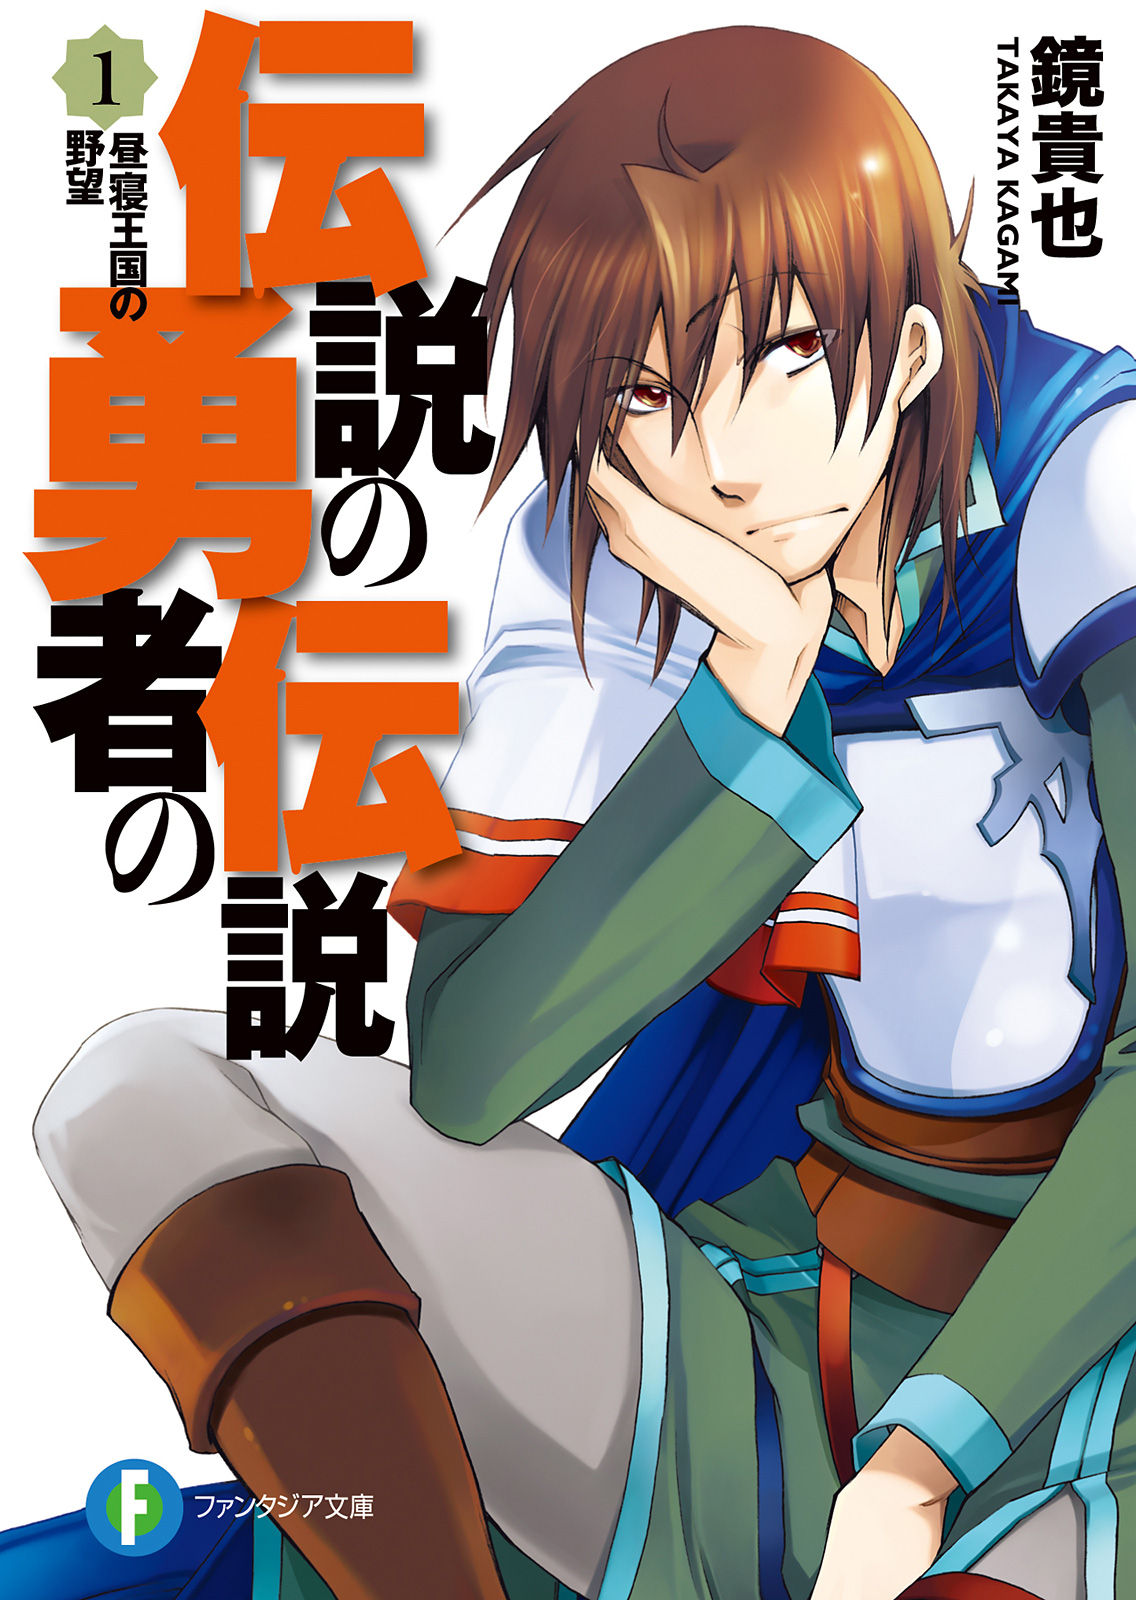 Densetsu no Yuusha no Densetsu - Legendary Saga (2010) by Kadokawa